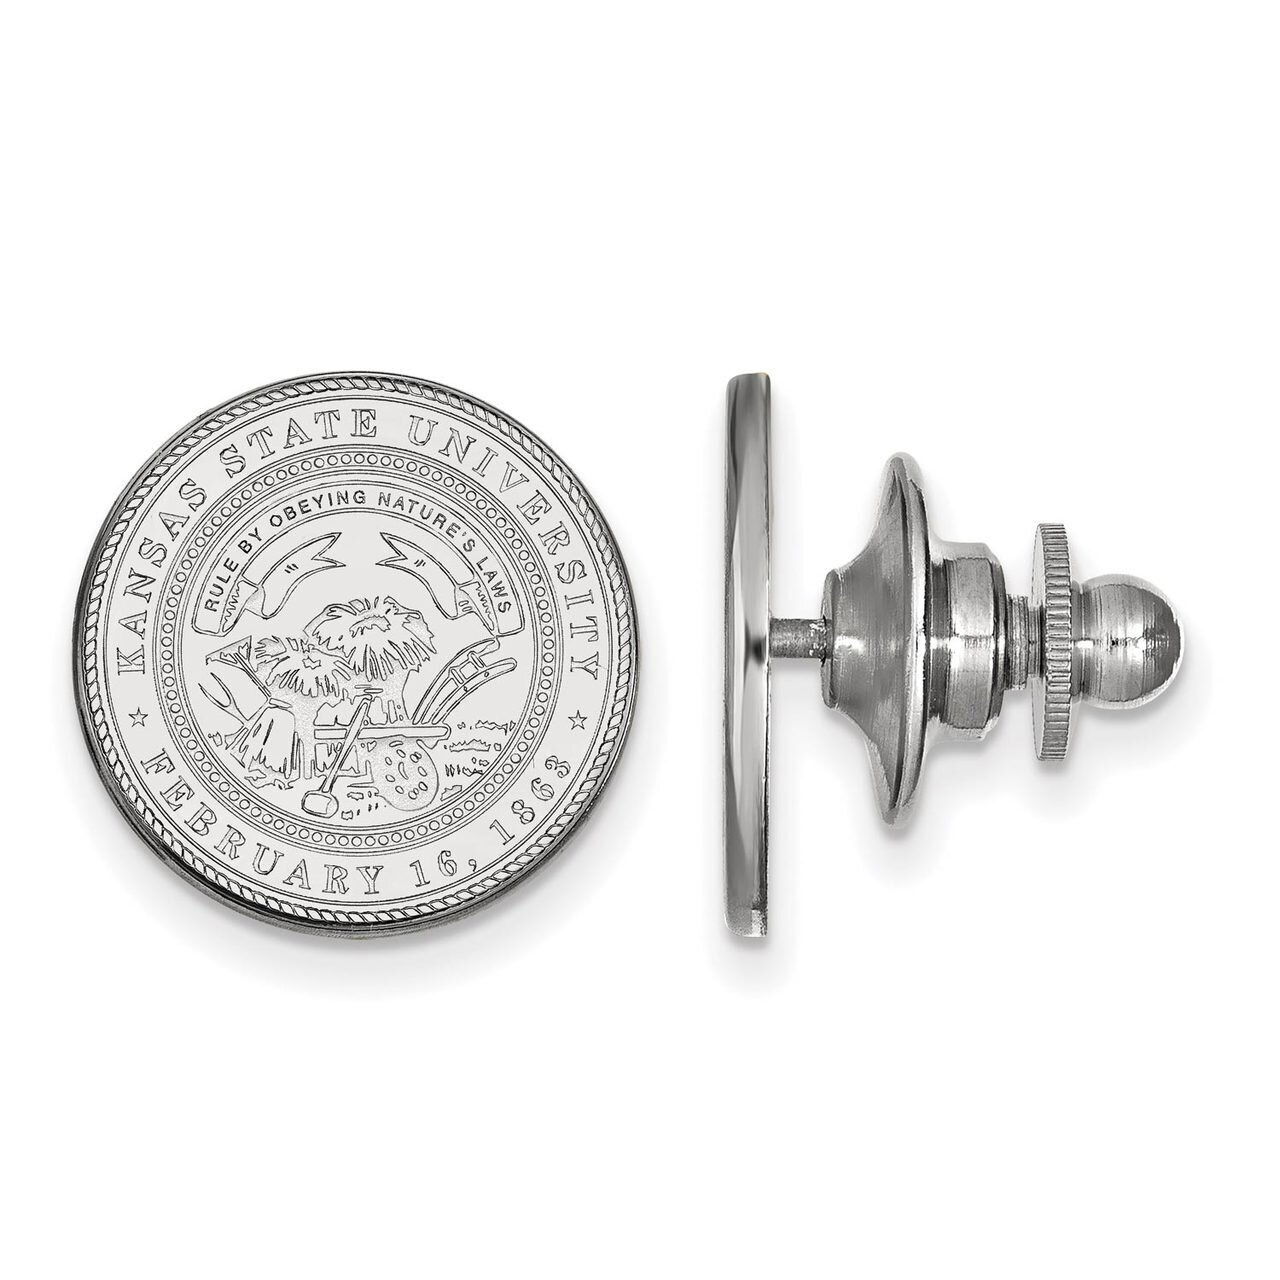 Kansas State University Crest Lapel Pin Sterling Silver SS062KSU